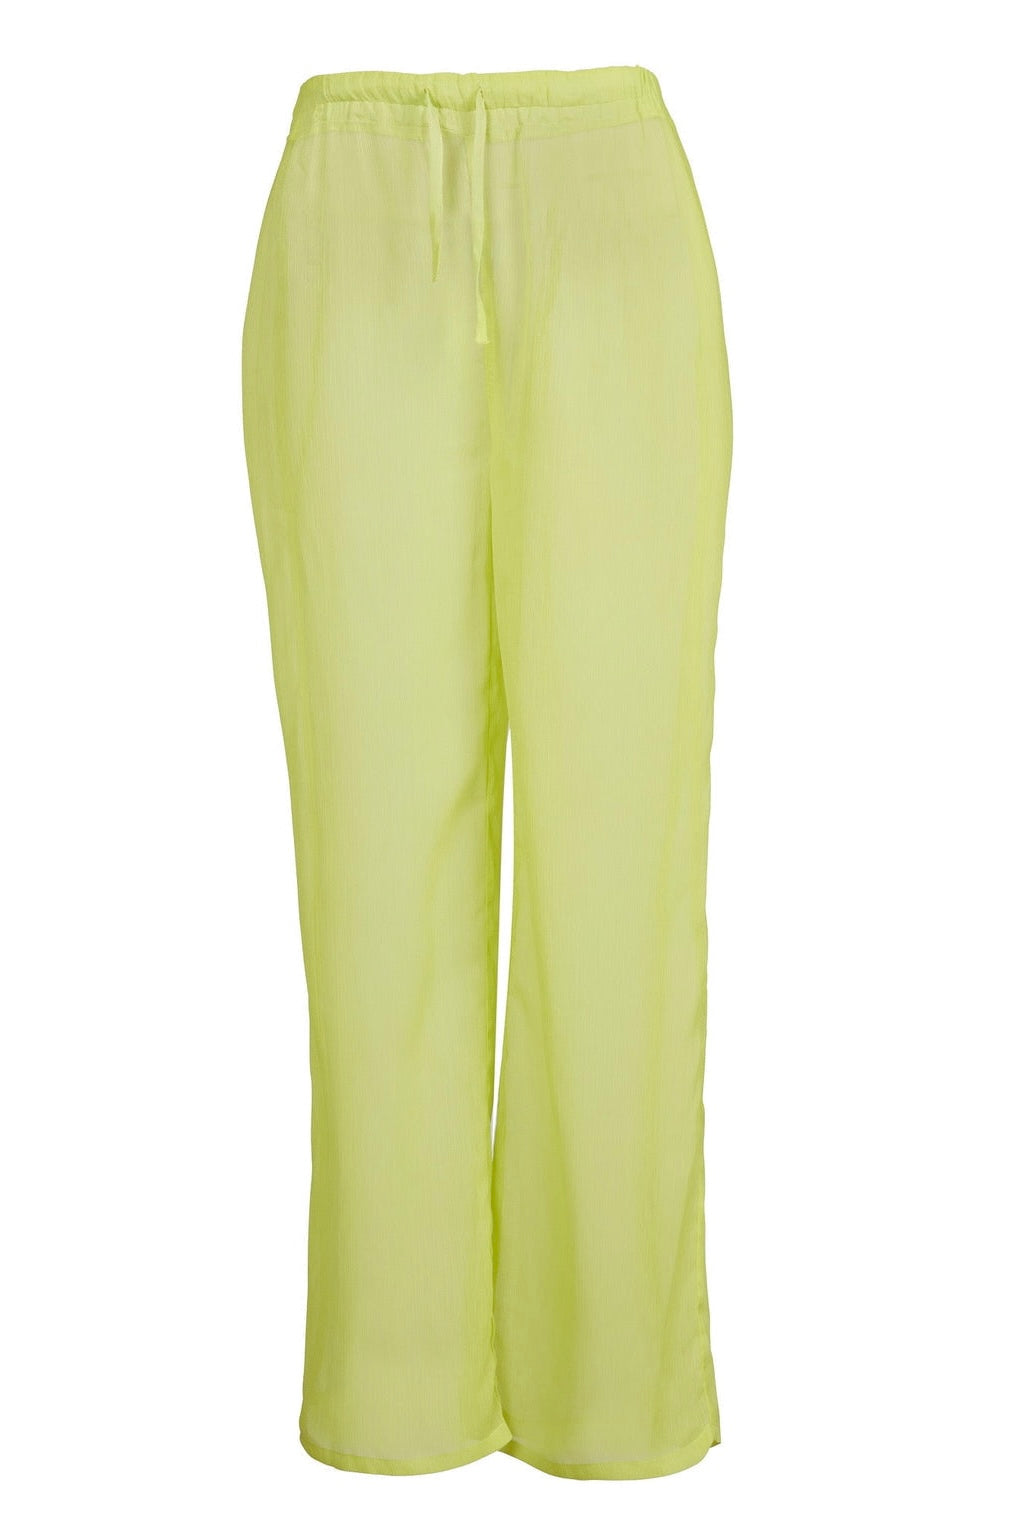 מכנסיים ארוכים צבע ירוק - LONG PANTS COLOR GREEN